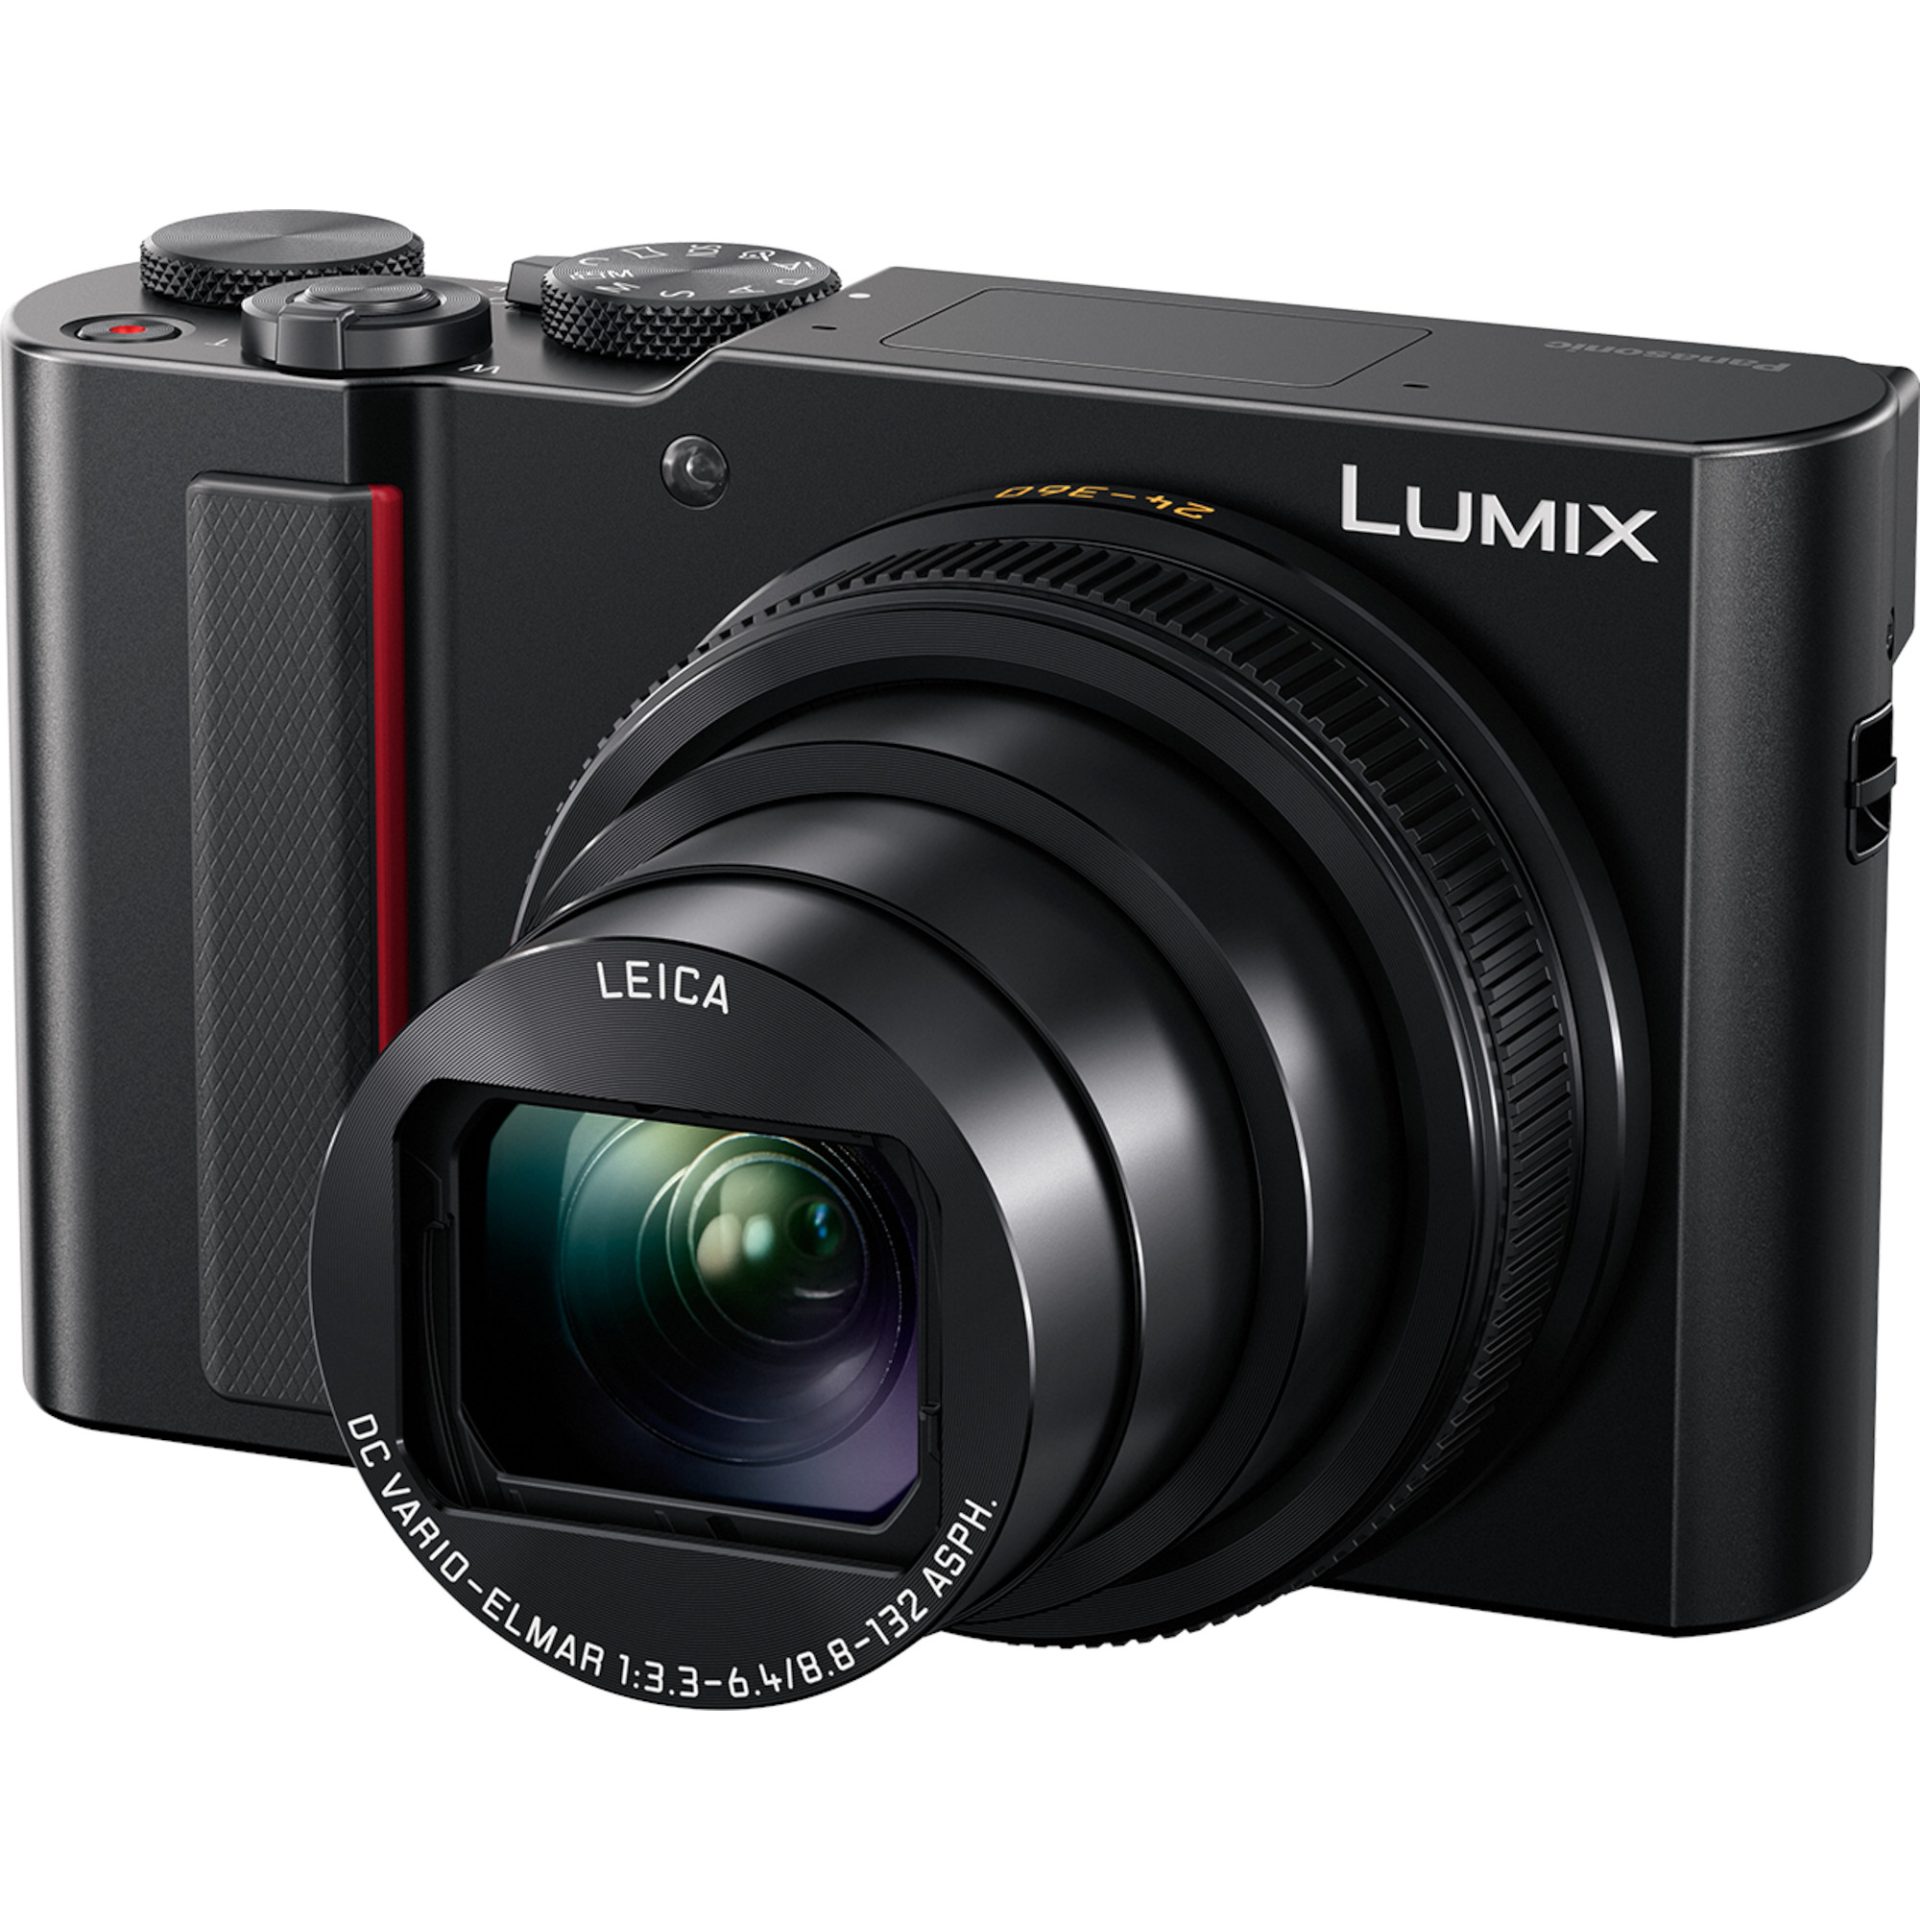 Panasonic DC-TZ200 Lumix kompaktní fotoaparát (1-palcový MOS senzor 20,1MP, optický zoom 15x, 4K video, PHOTO 4K, LVF hledáček, Post Focus, Wi-Fi), če